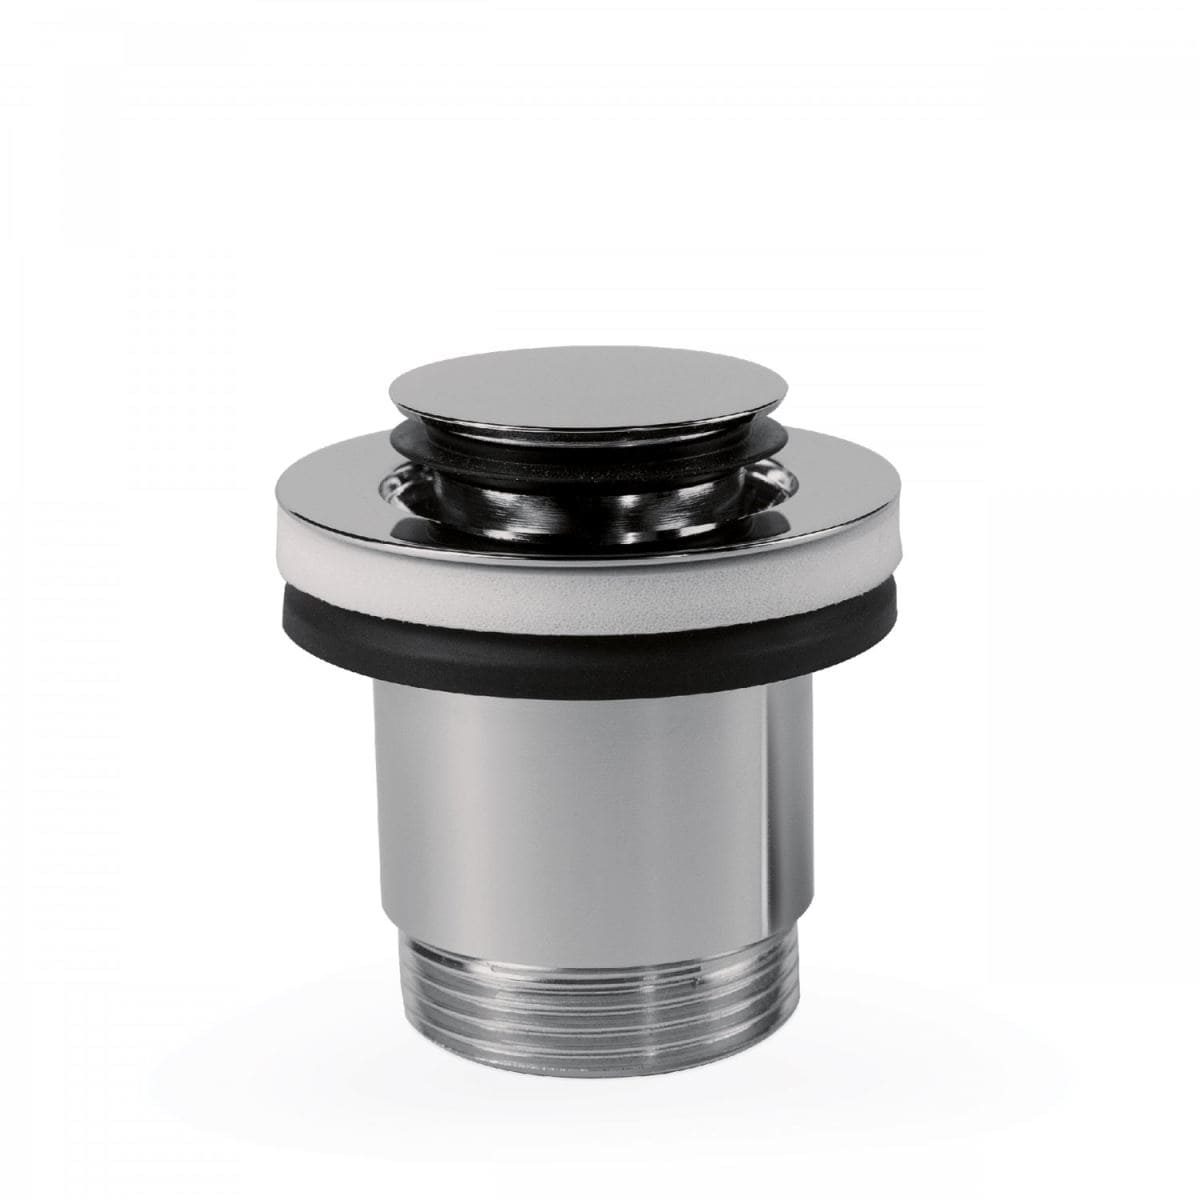 Tres Metall Design Click-Clack Ablauf 40mm in metallic schwarz unter Ablauf & Siphon